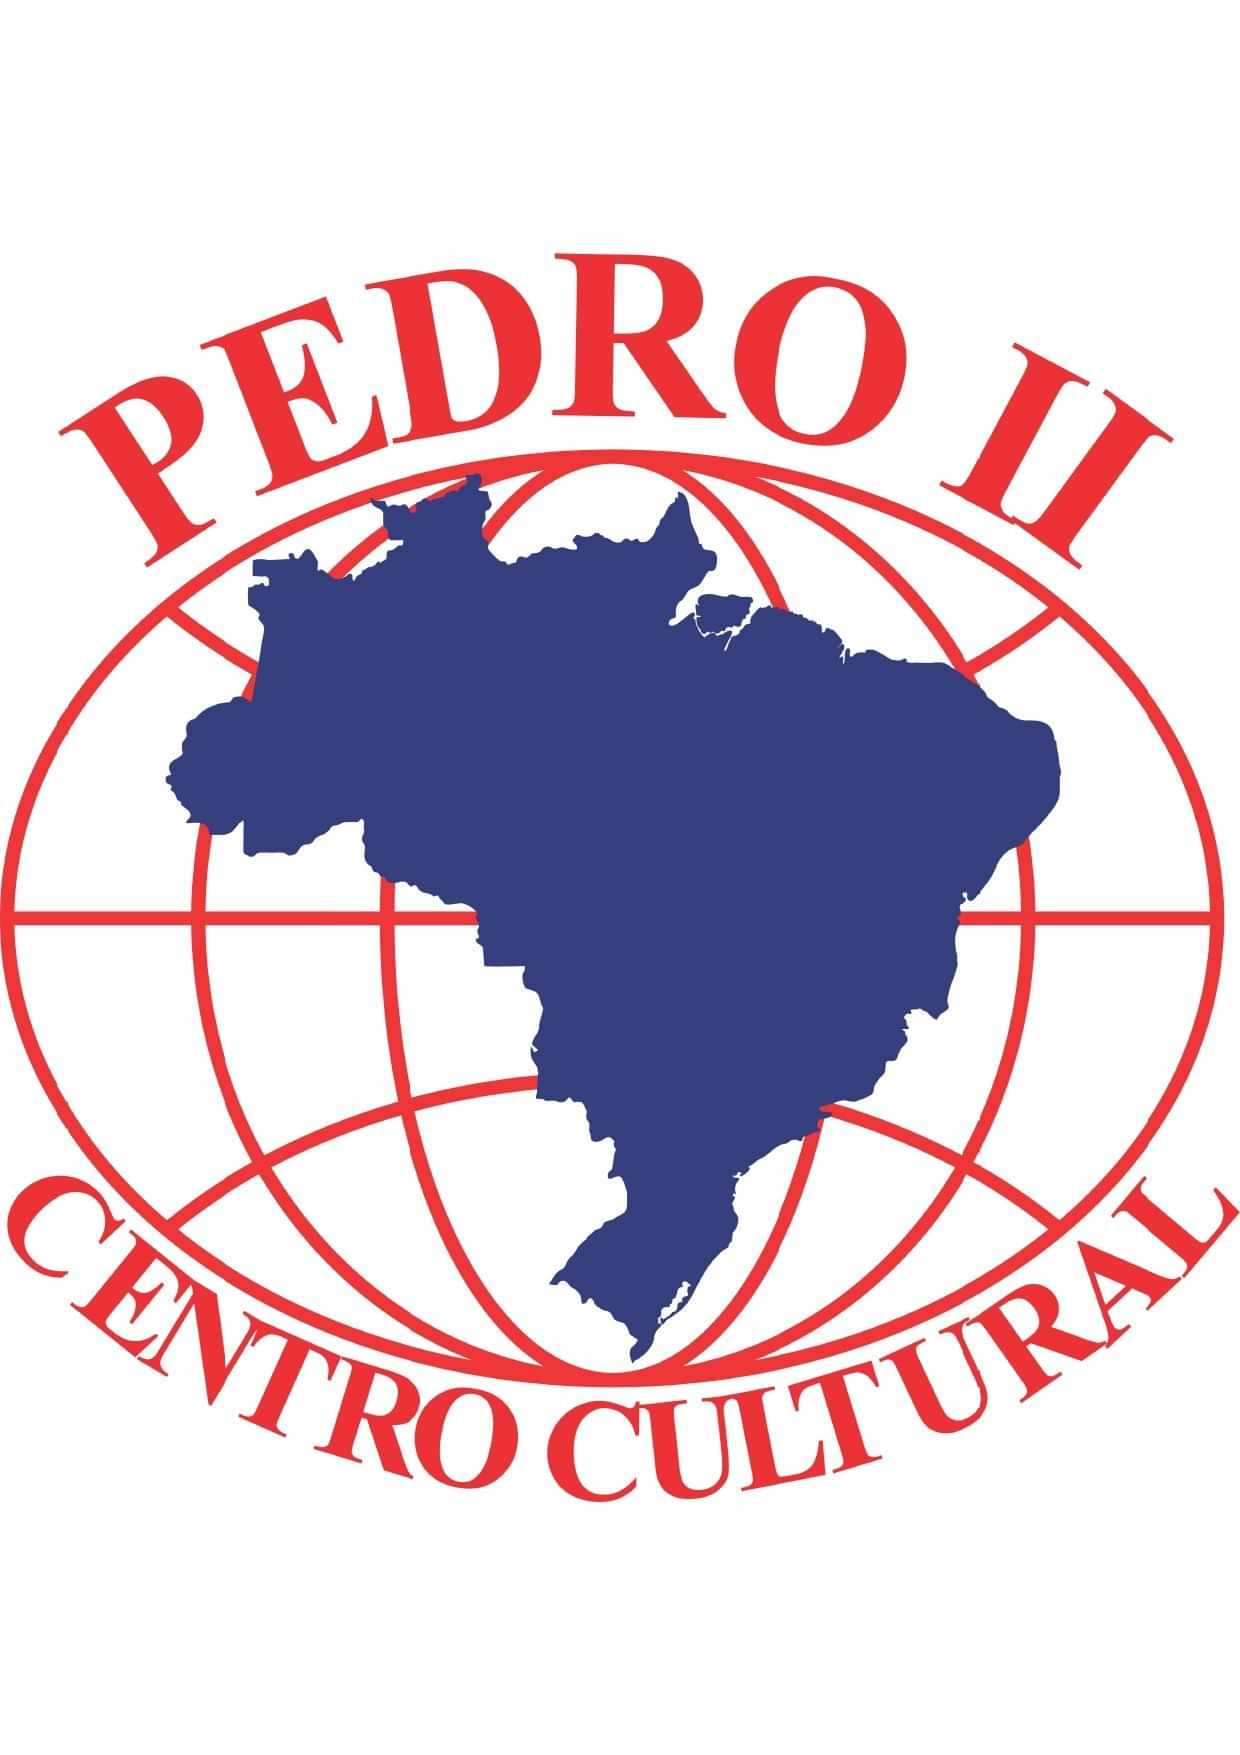  Centro Cultural Pedro II - Villagran Cabrita 